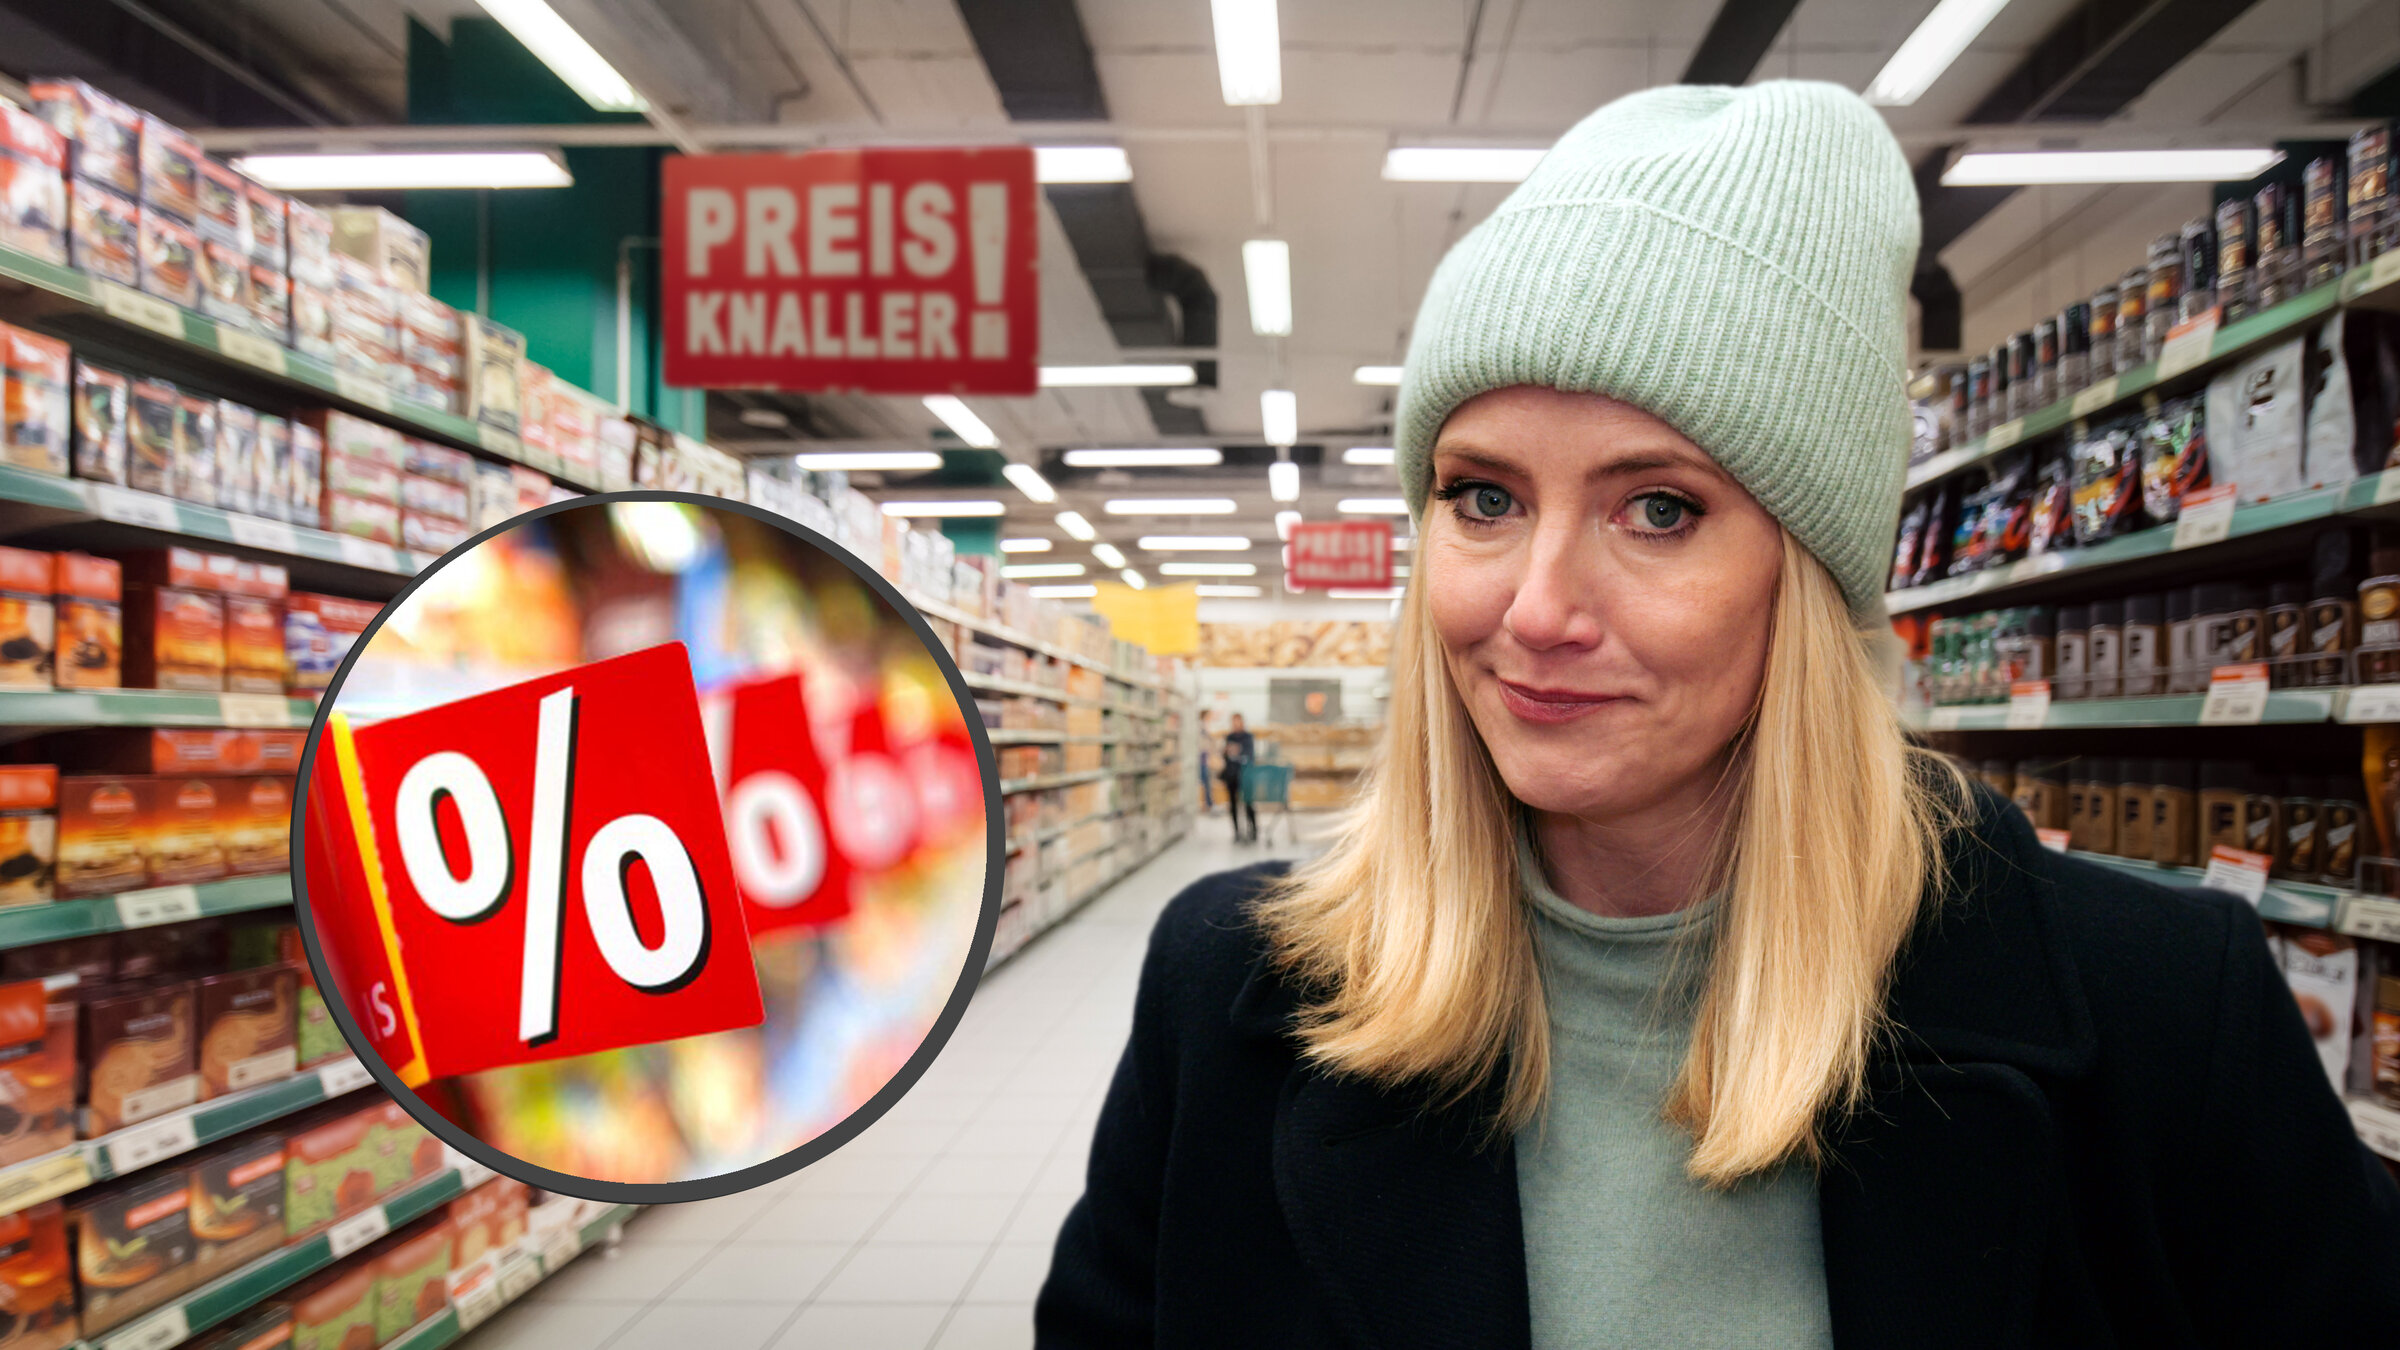 "Die Tricks der Supermärkte - mit Pia Osterhaus": Zwischen zwei Supermarktregalen mit Schnäppchenschildern steht Pia Osterhaus, eine junge blonde Frau mit Strickmütze, und lächelt leicht skeptisch in die Kamera.